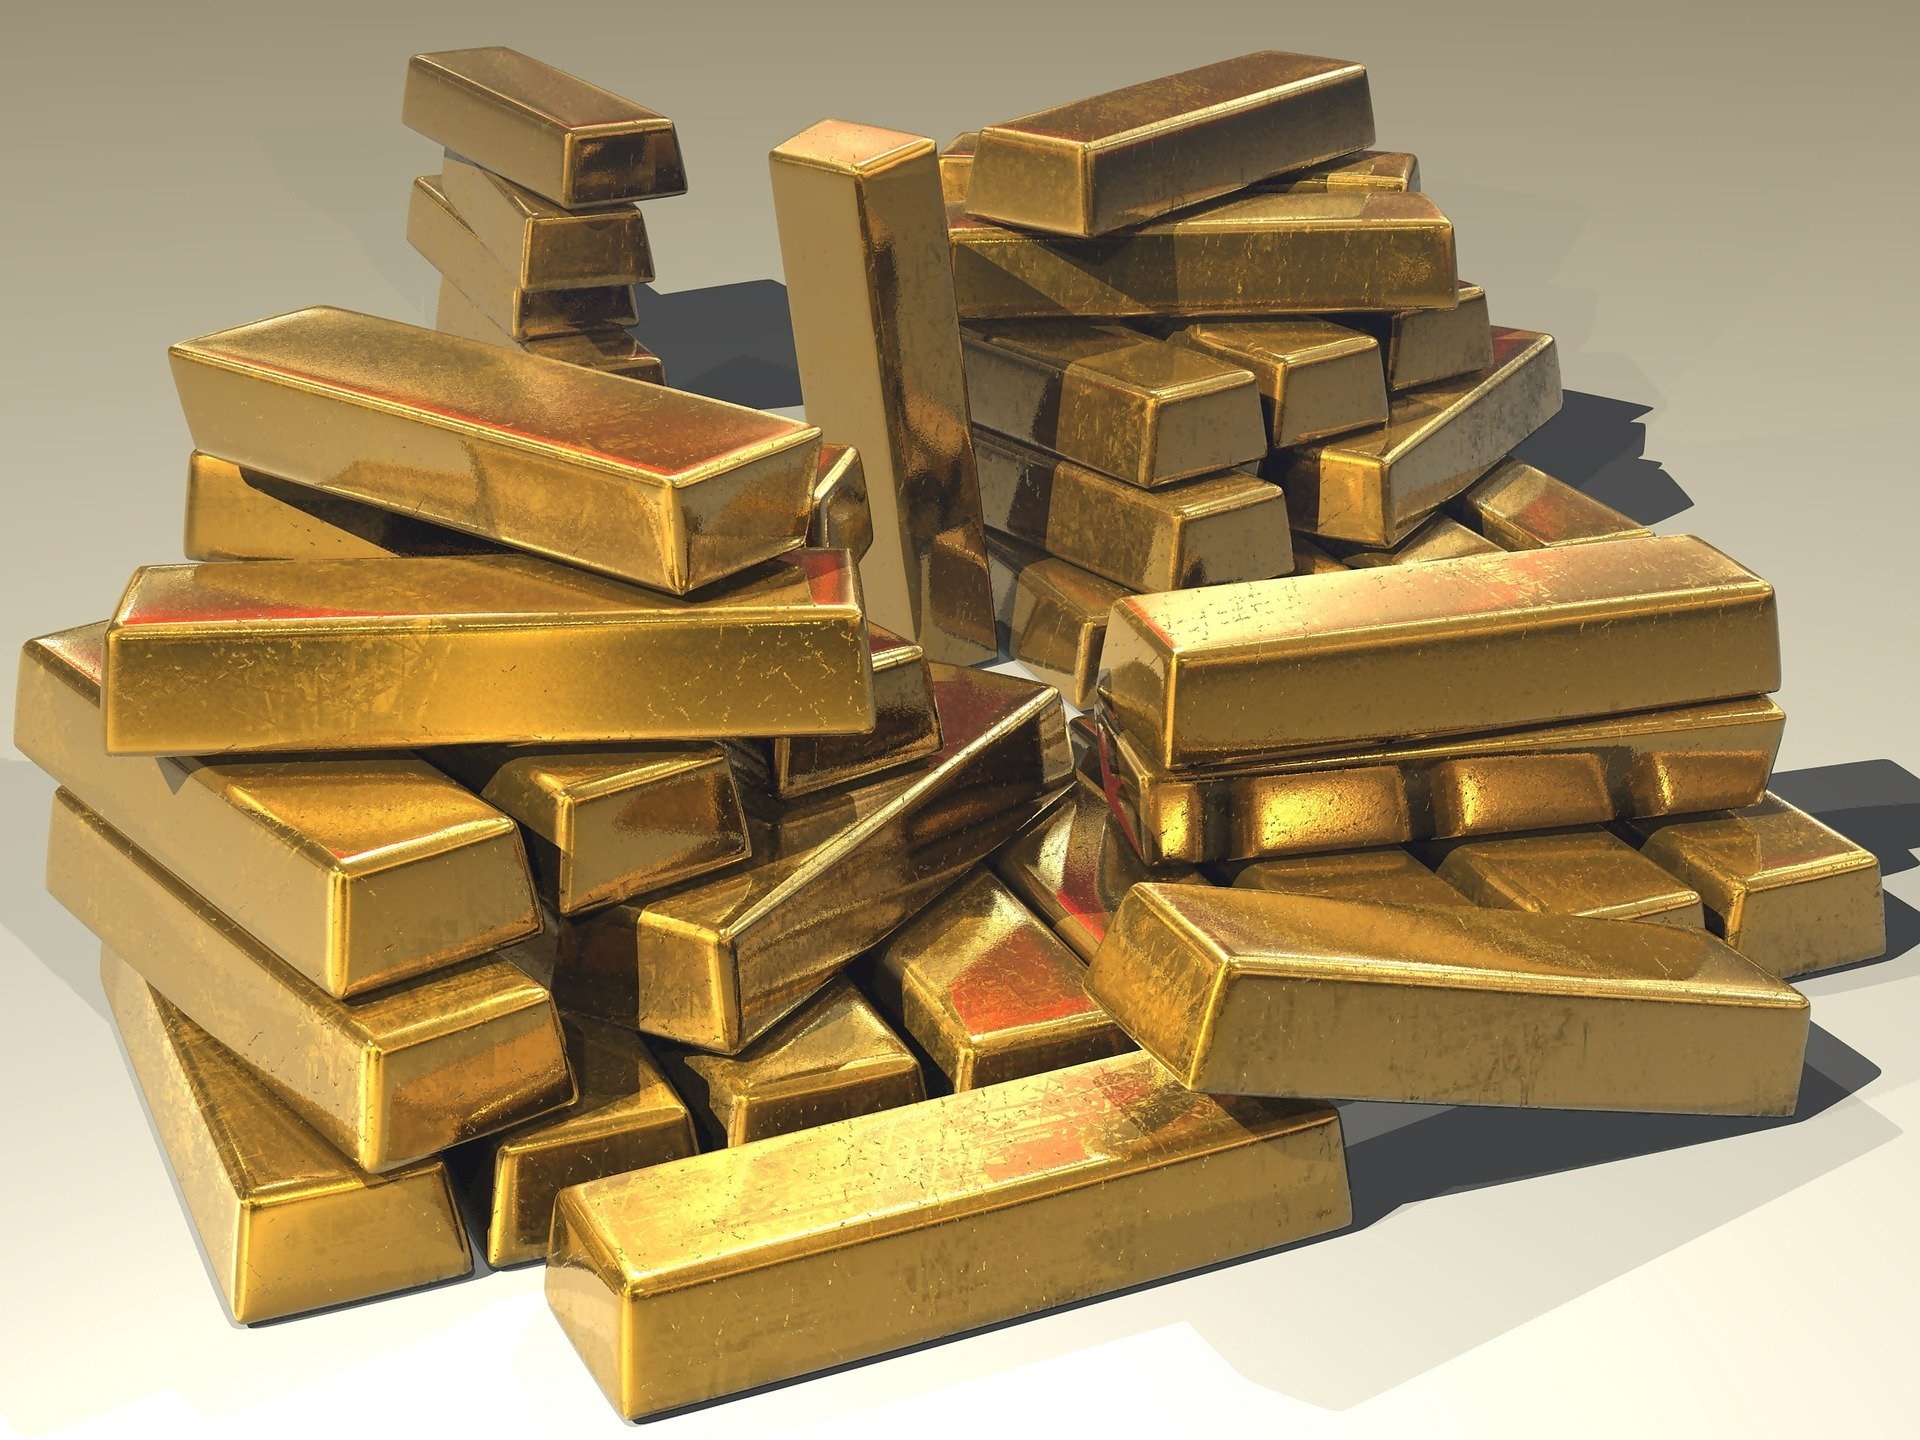 Ouro: um dos fatores que tem impulsionado o rali do ouro é a desvalorização do dólar ante outras moedas fortes